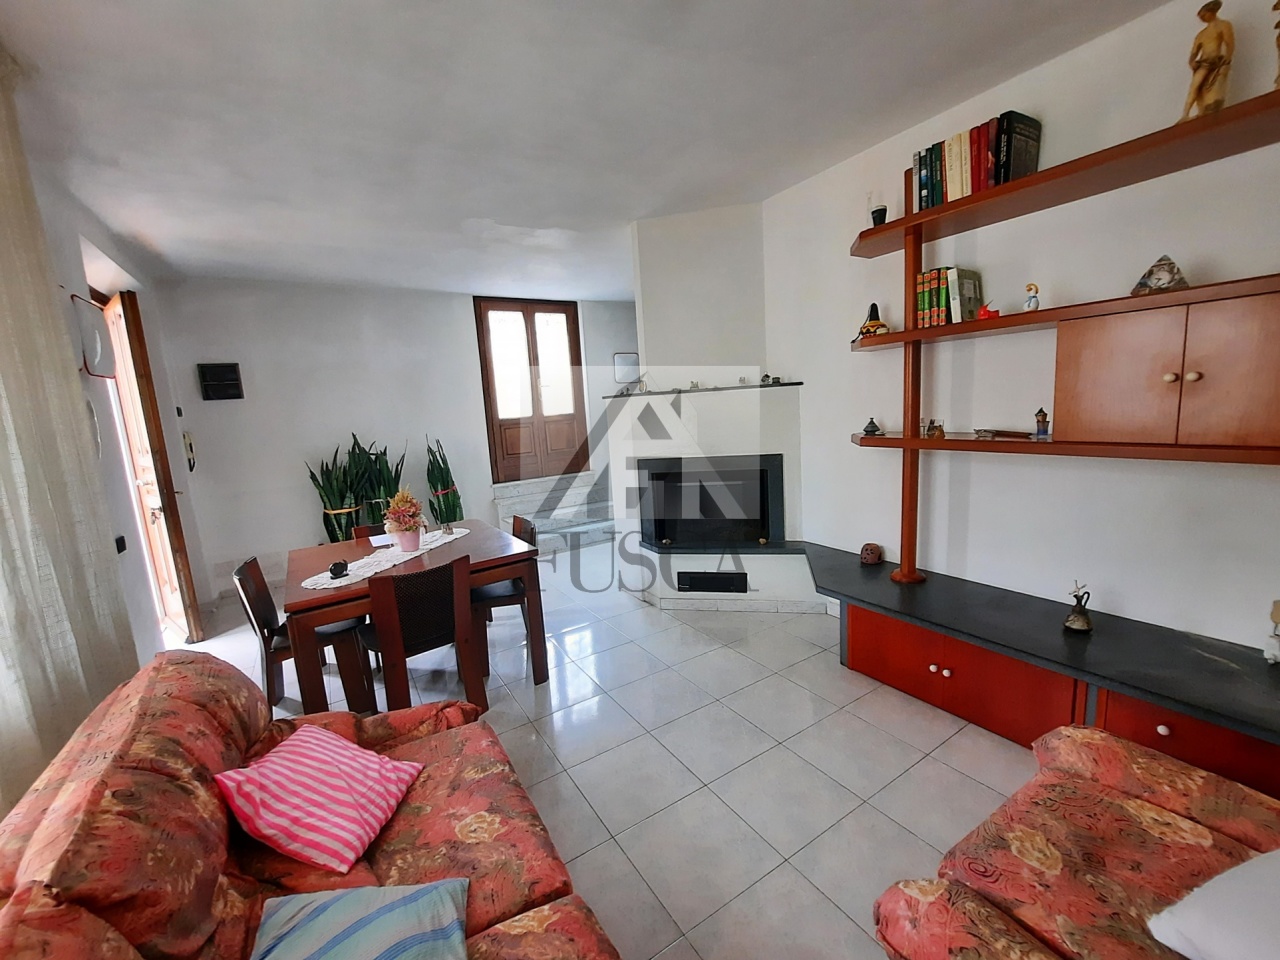 Appartamento in vendita a Vecchiano, 5 locali, prezzo € 220.000 | PortaleAgenzieImmobiliari.it